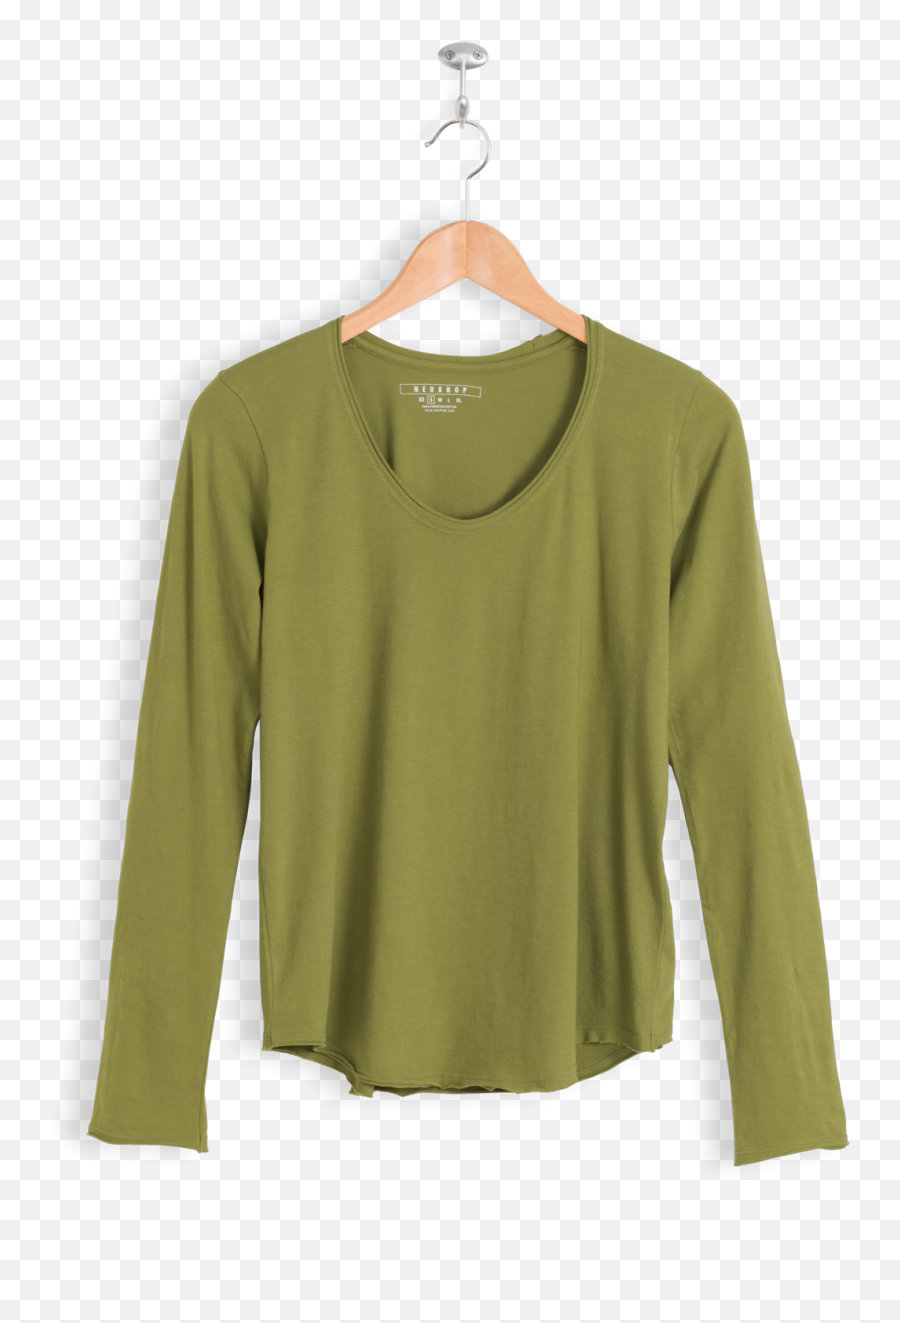 Neushop Womenu0027s Eero 100 Tanguis Cotton Long Sleeve Premium T - Shirt Long Sleeve Png,Long Sleeve Shirt Png